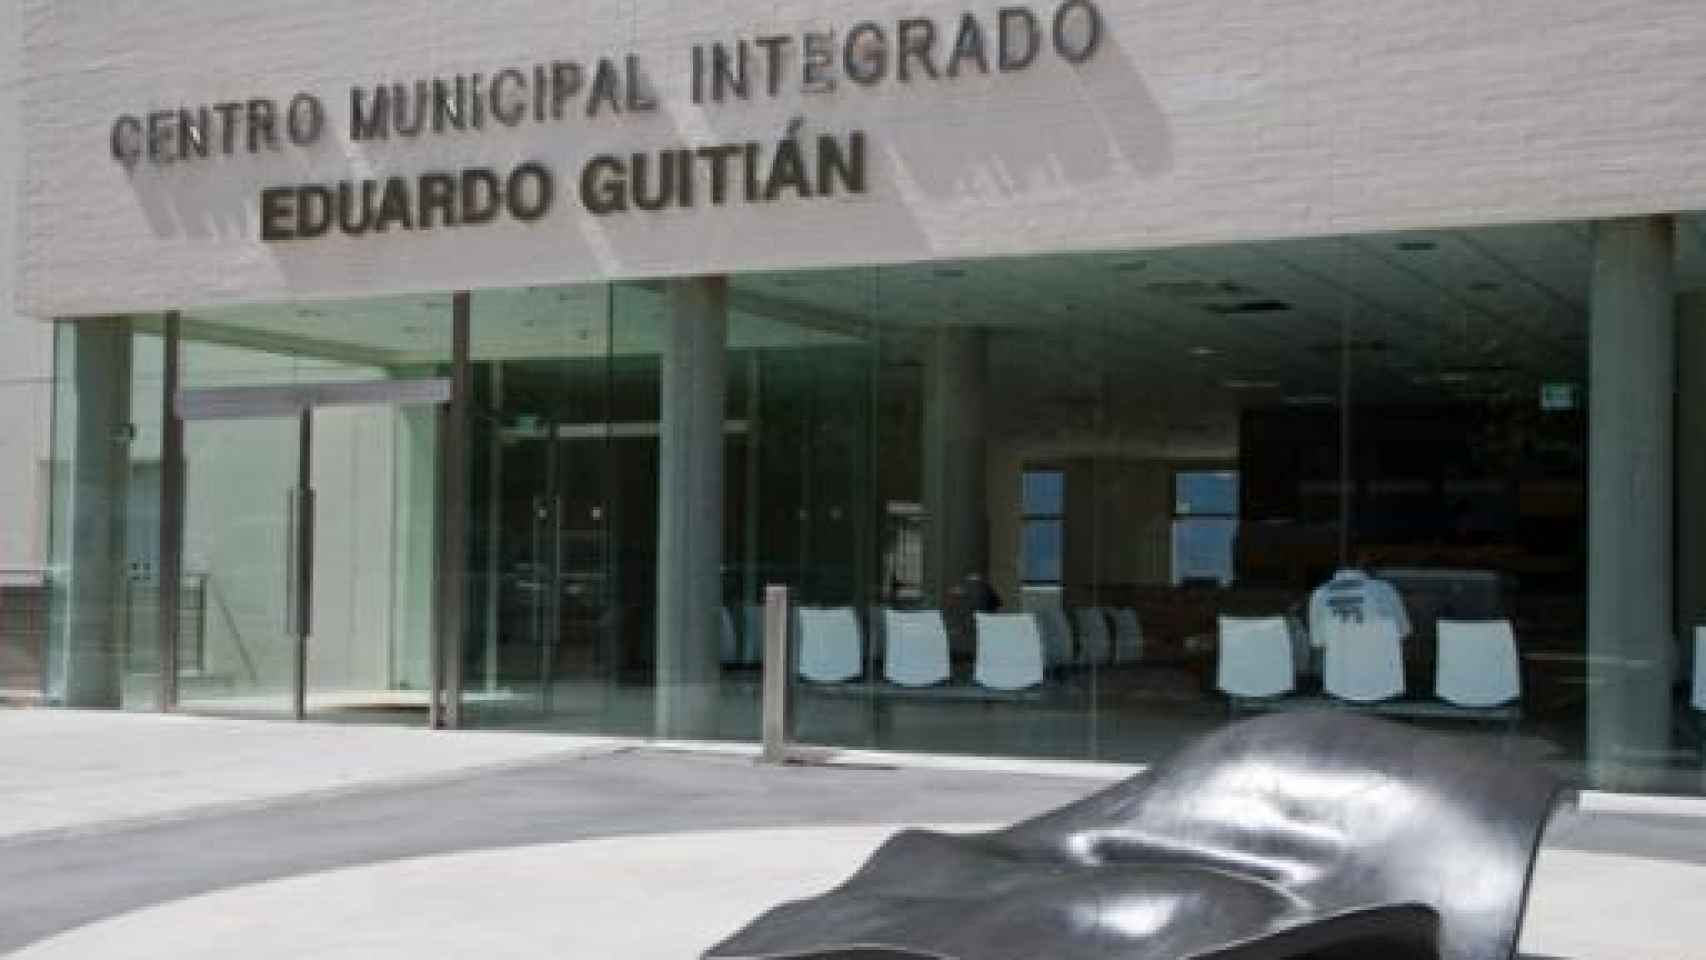 La trabajadora ha fallecido en el Centro Municipal Integrado 'Eduardo Guitián' de Guadalajara.